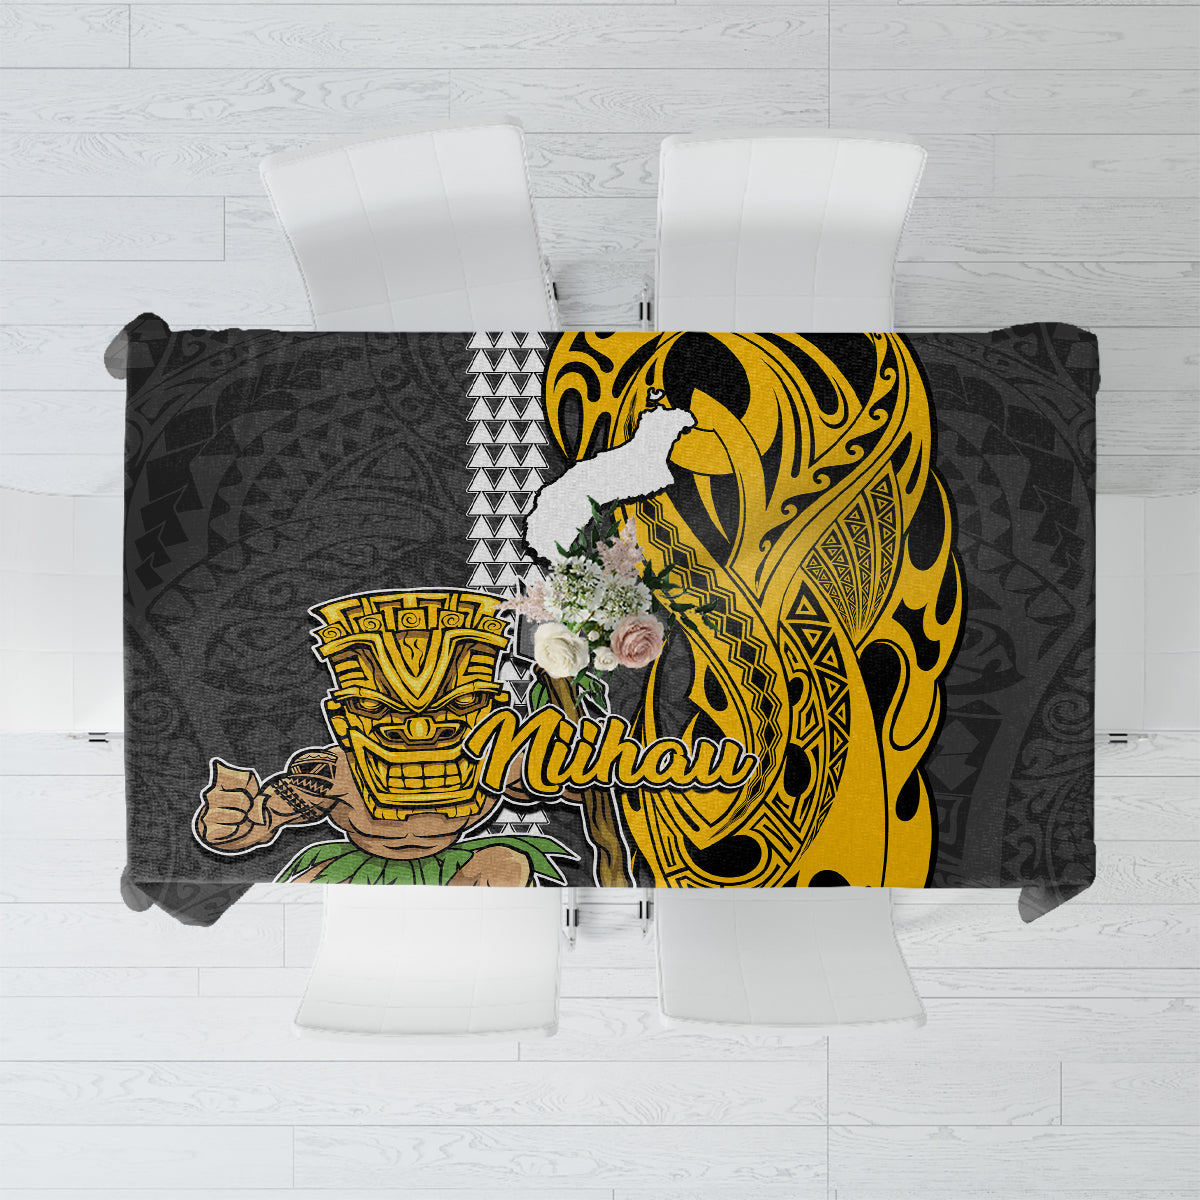 Hawaii Niihau Island Tablecloth Hawaiian Warrior and Kakau Symbols Abstract Tattoo LT03 Yellow - Polynesian Pride